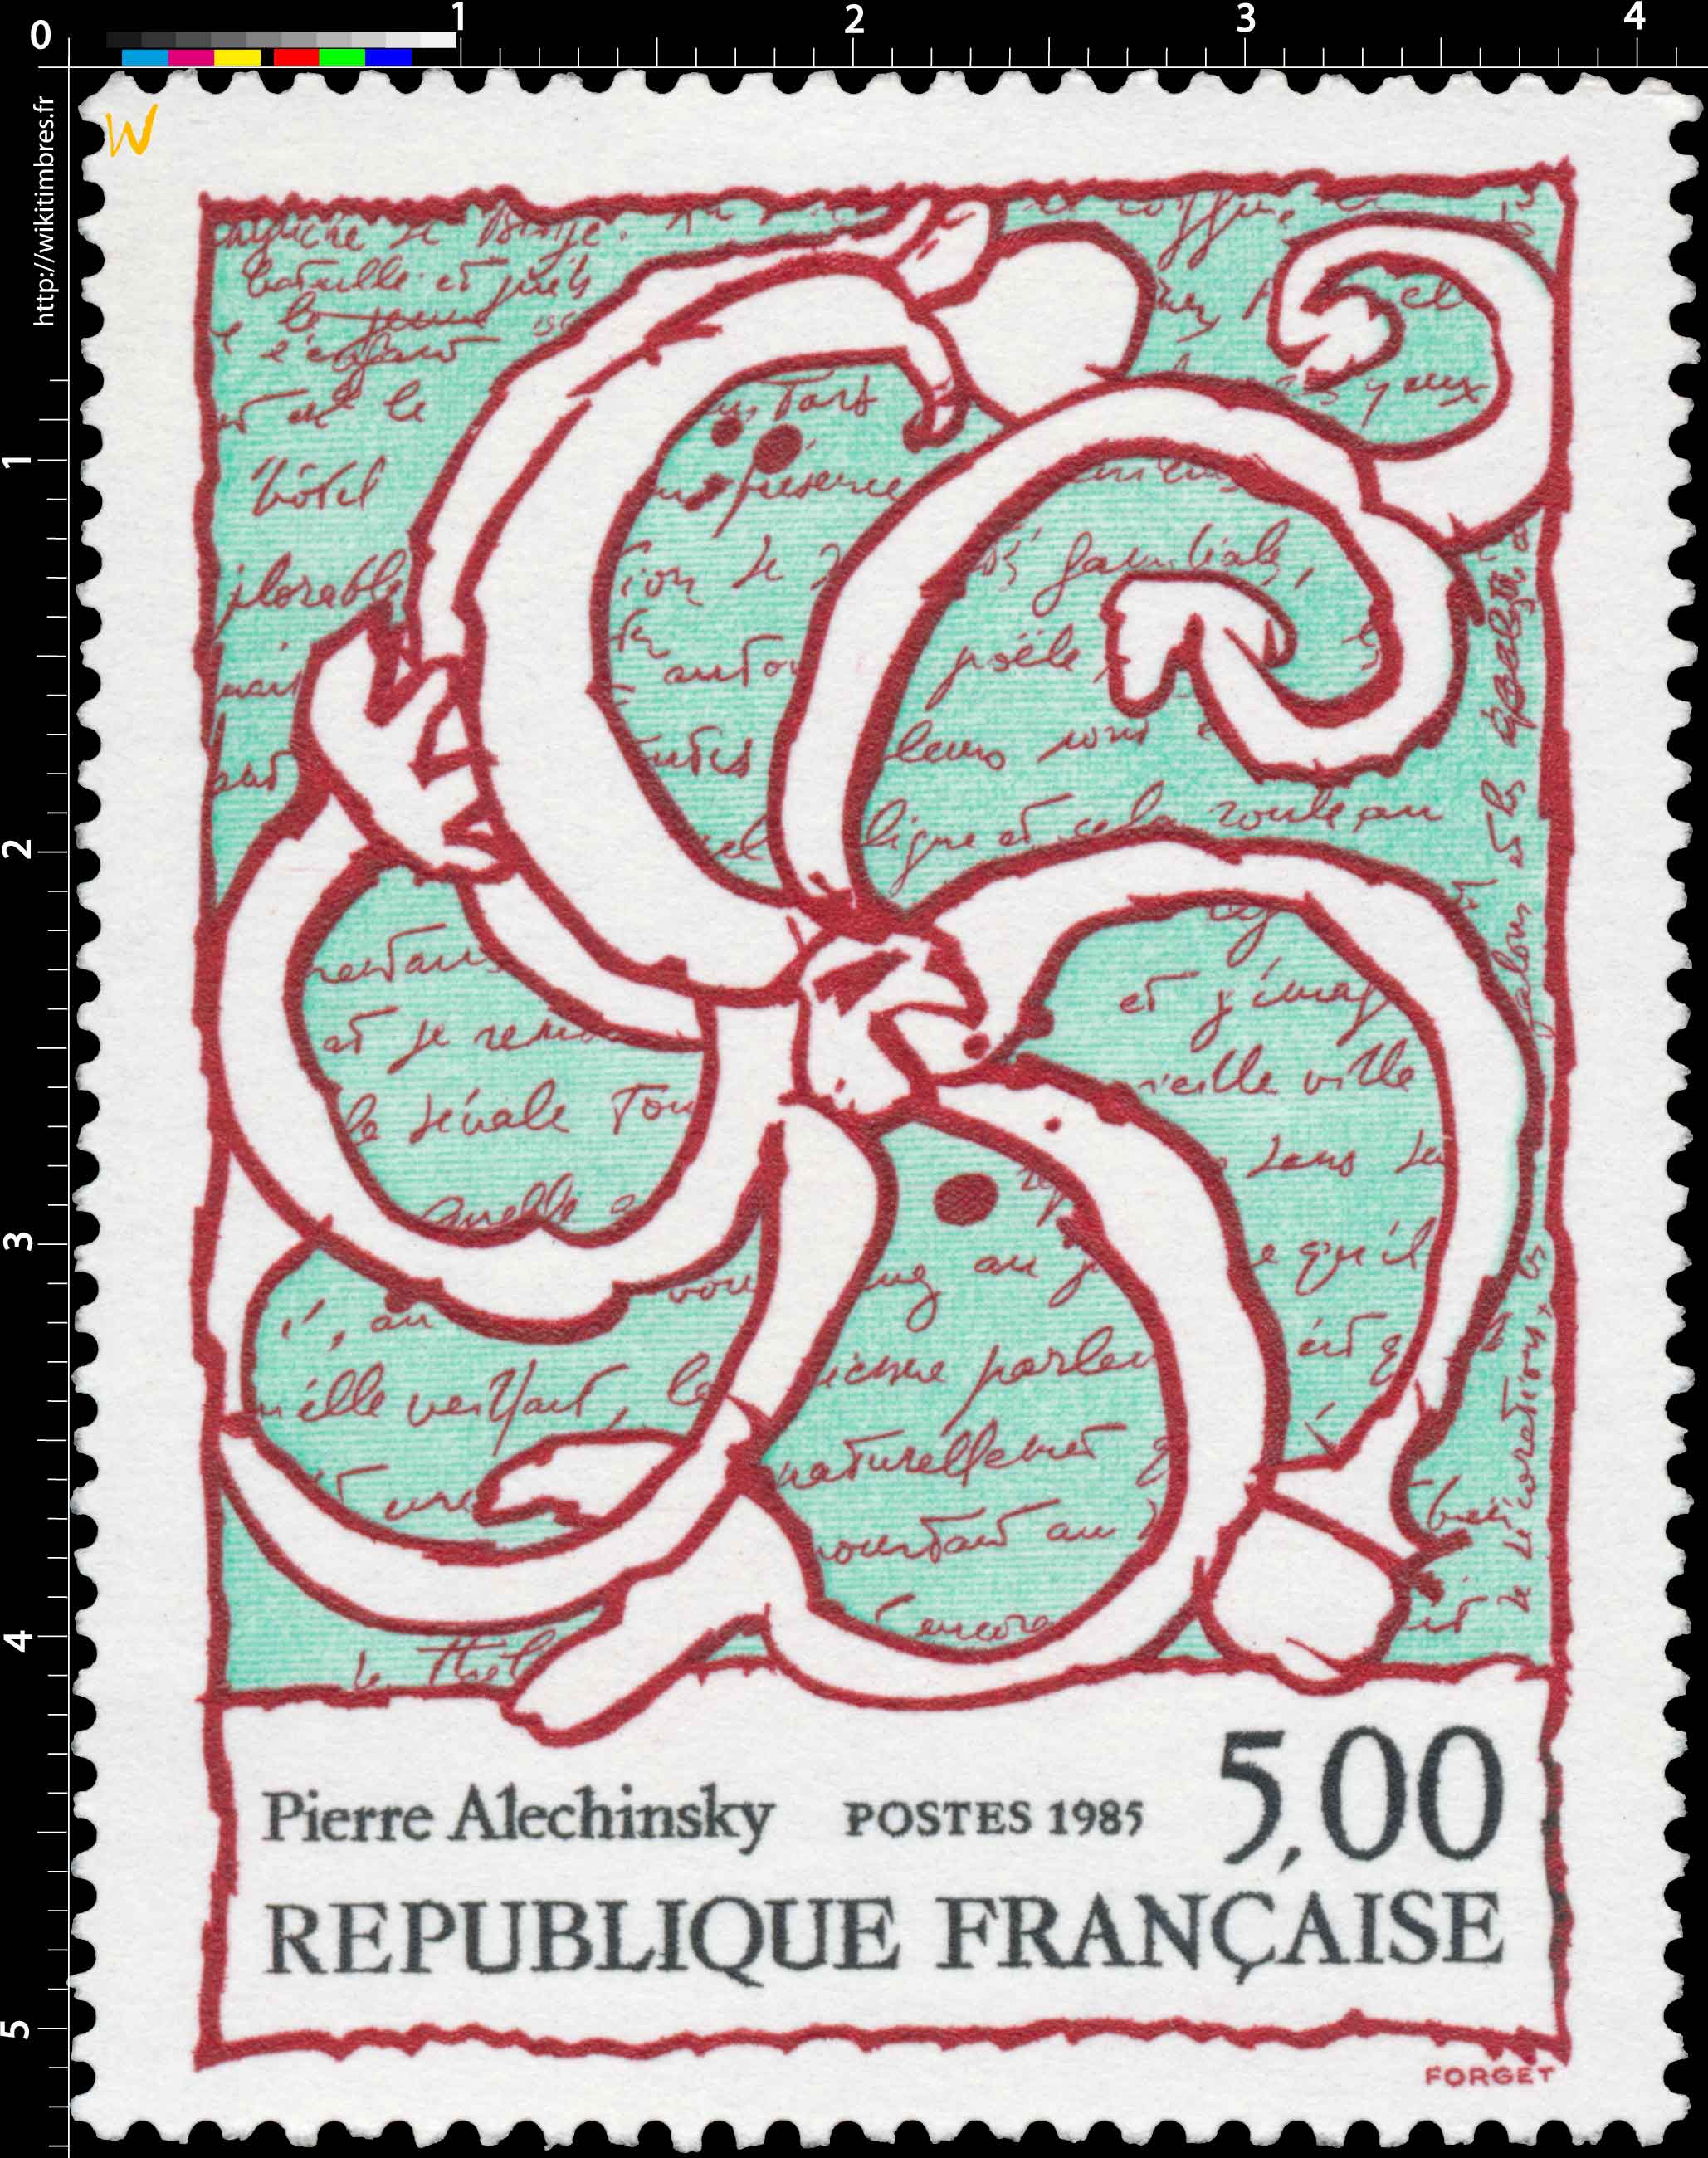 1985 Pierre Alechinsky